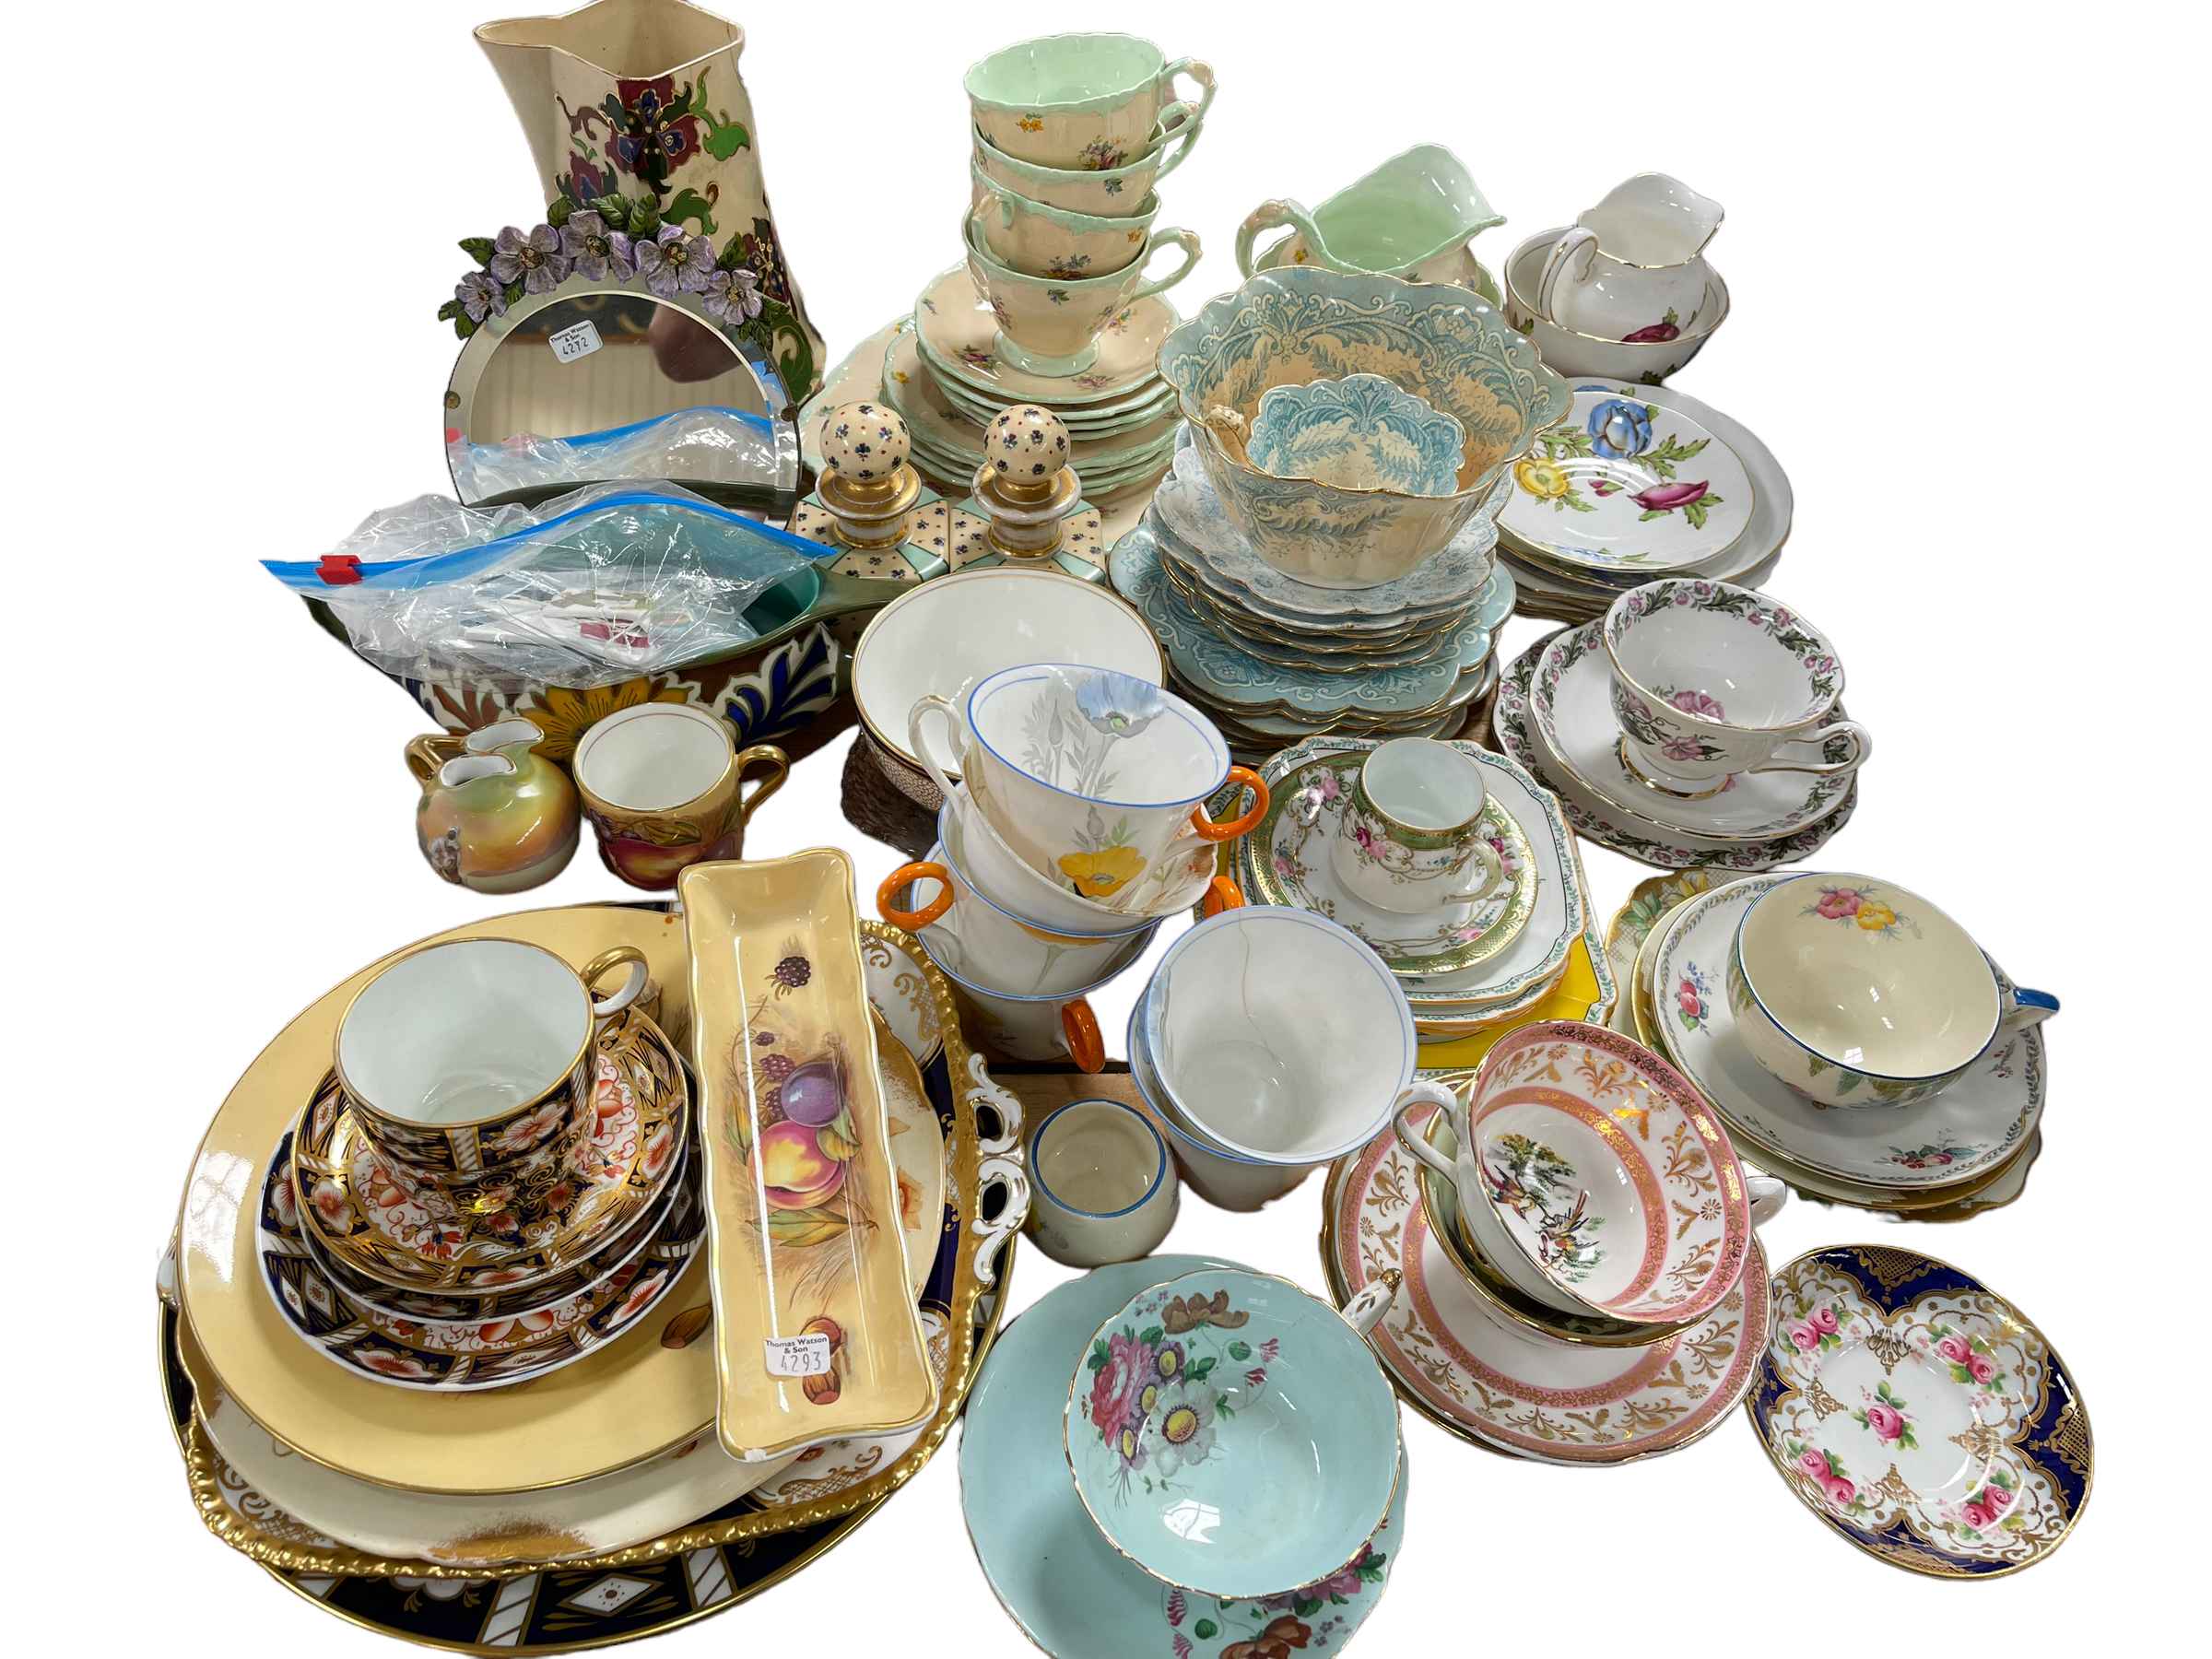 Decorative tea china, barbola mirror, etc.